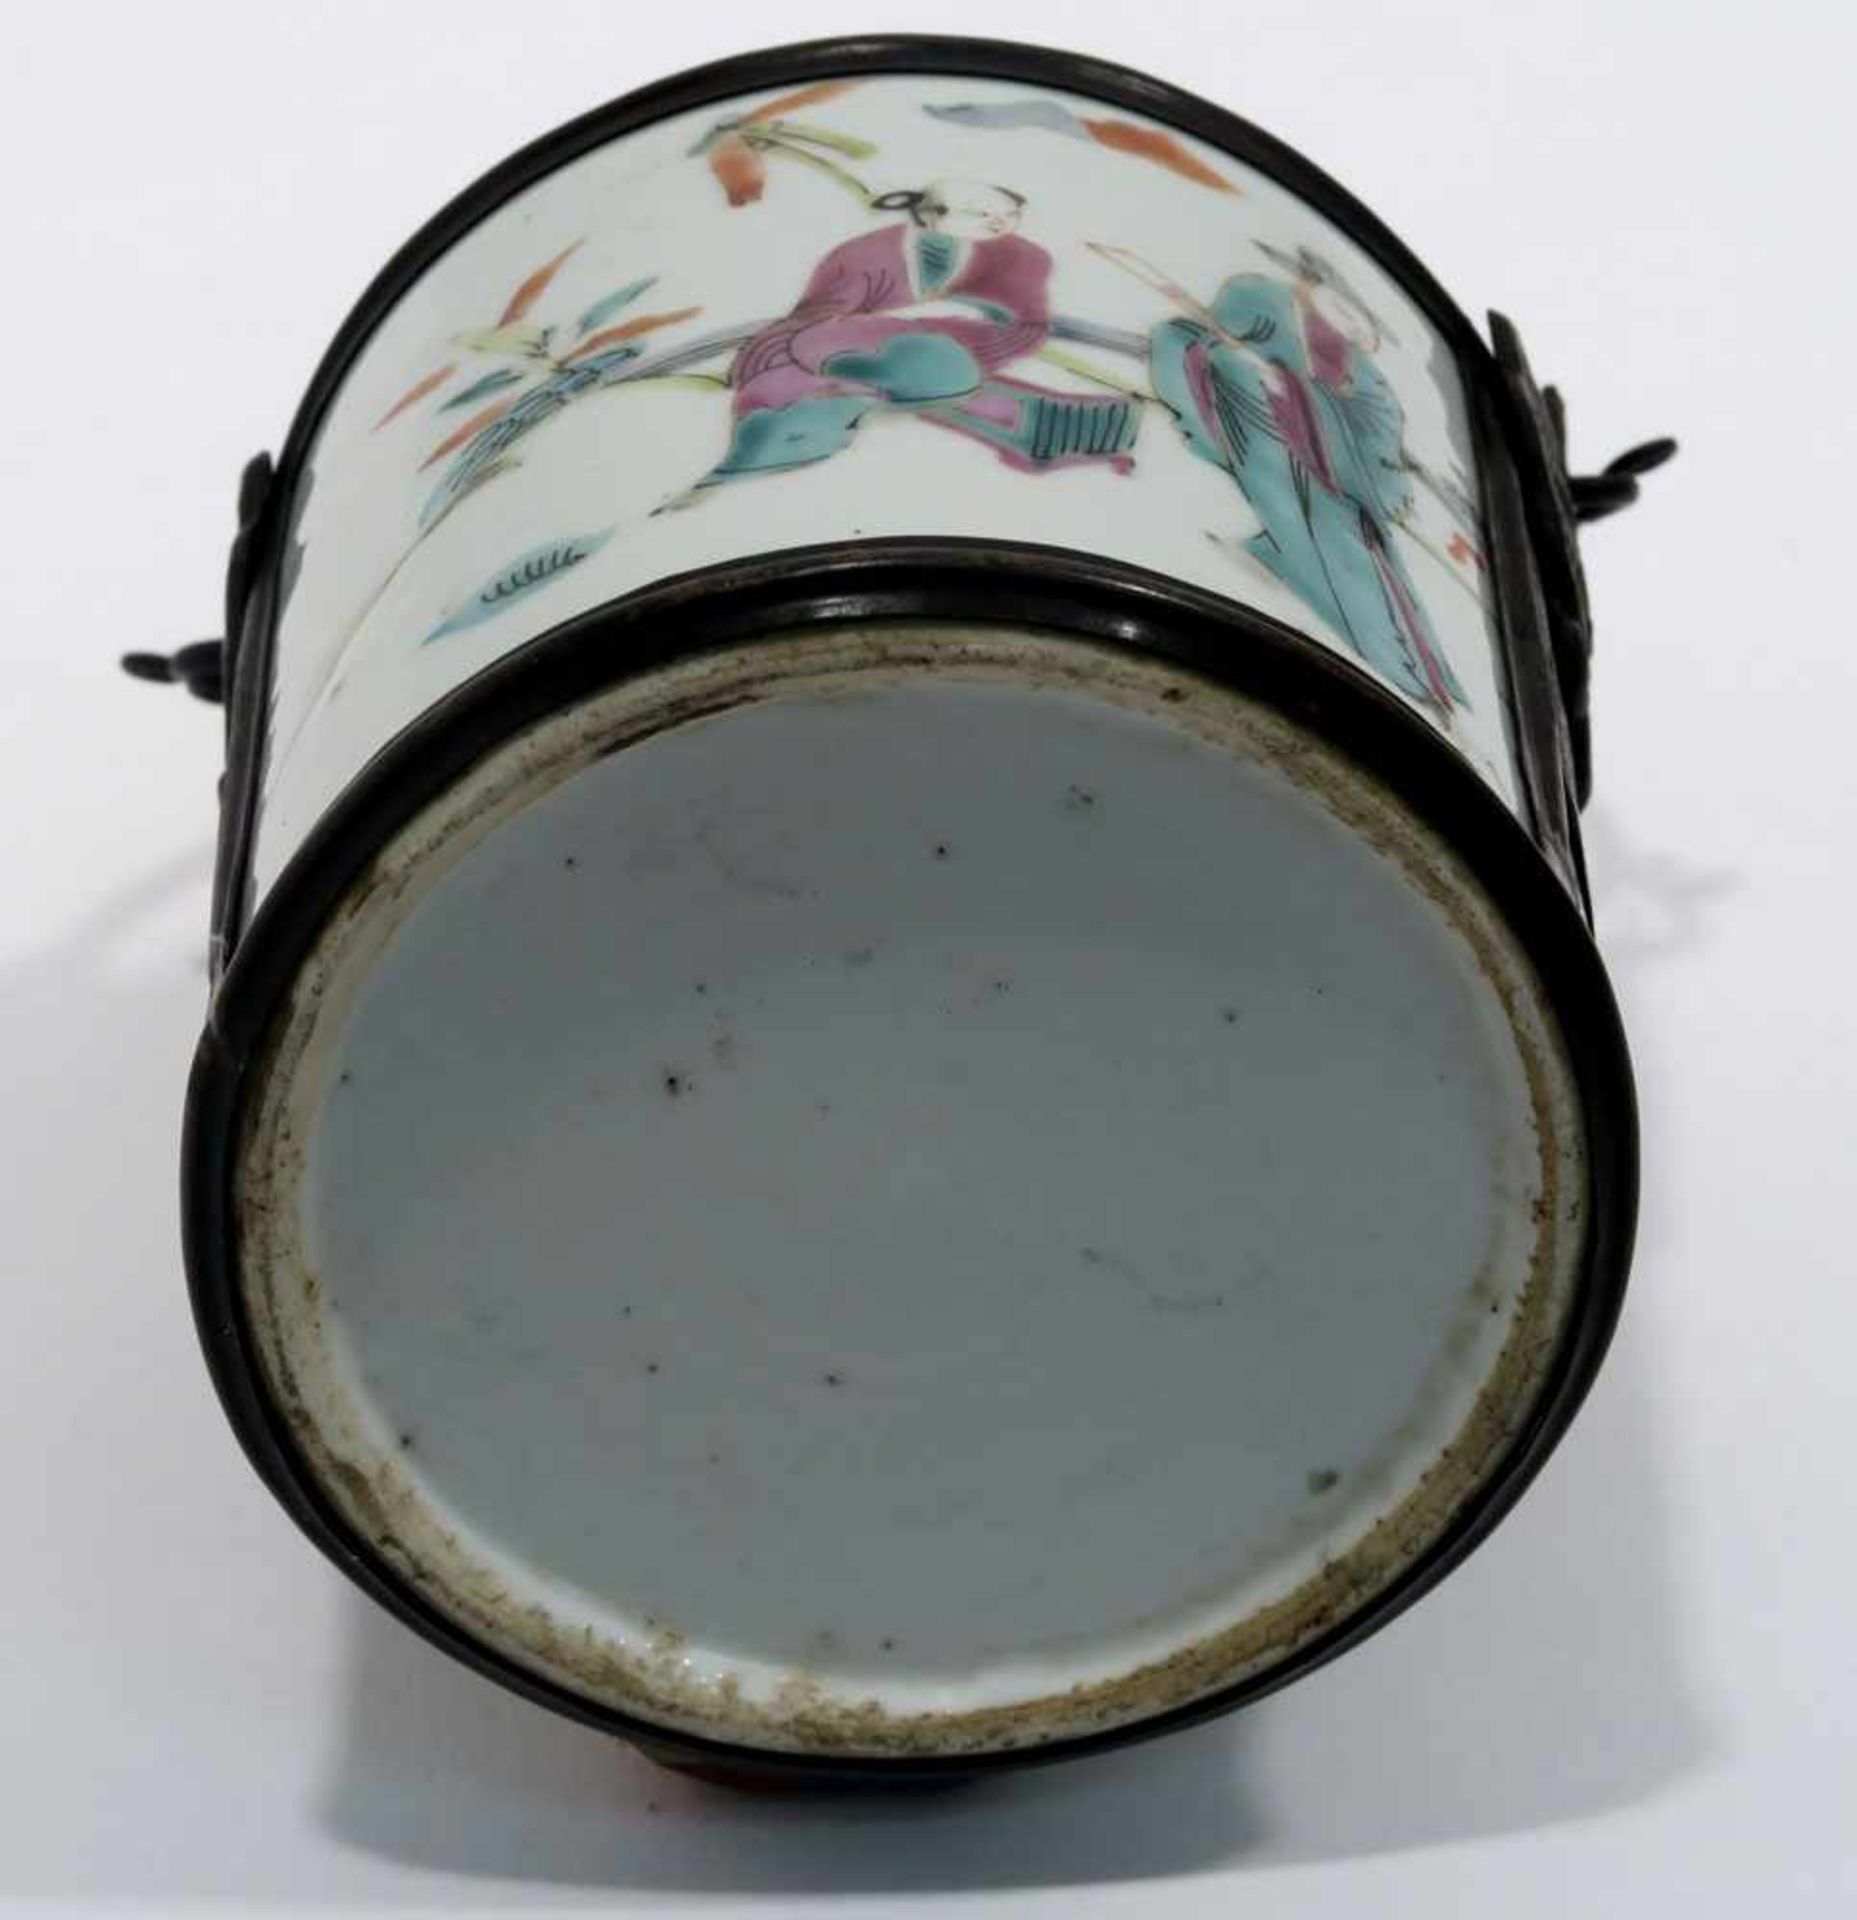 Opiumpfeife / Vase / DeckelgefäßChina. Porzellan, tlw. mit Kupfermontierung. Verschiedene bunte bzw. - Bild 14 aus 21